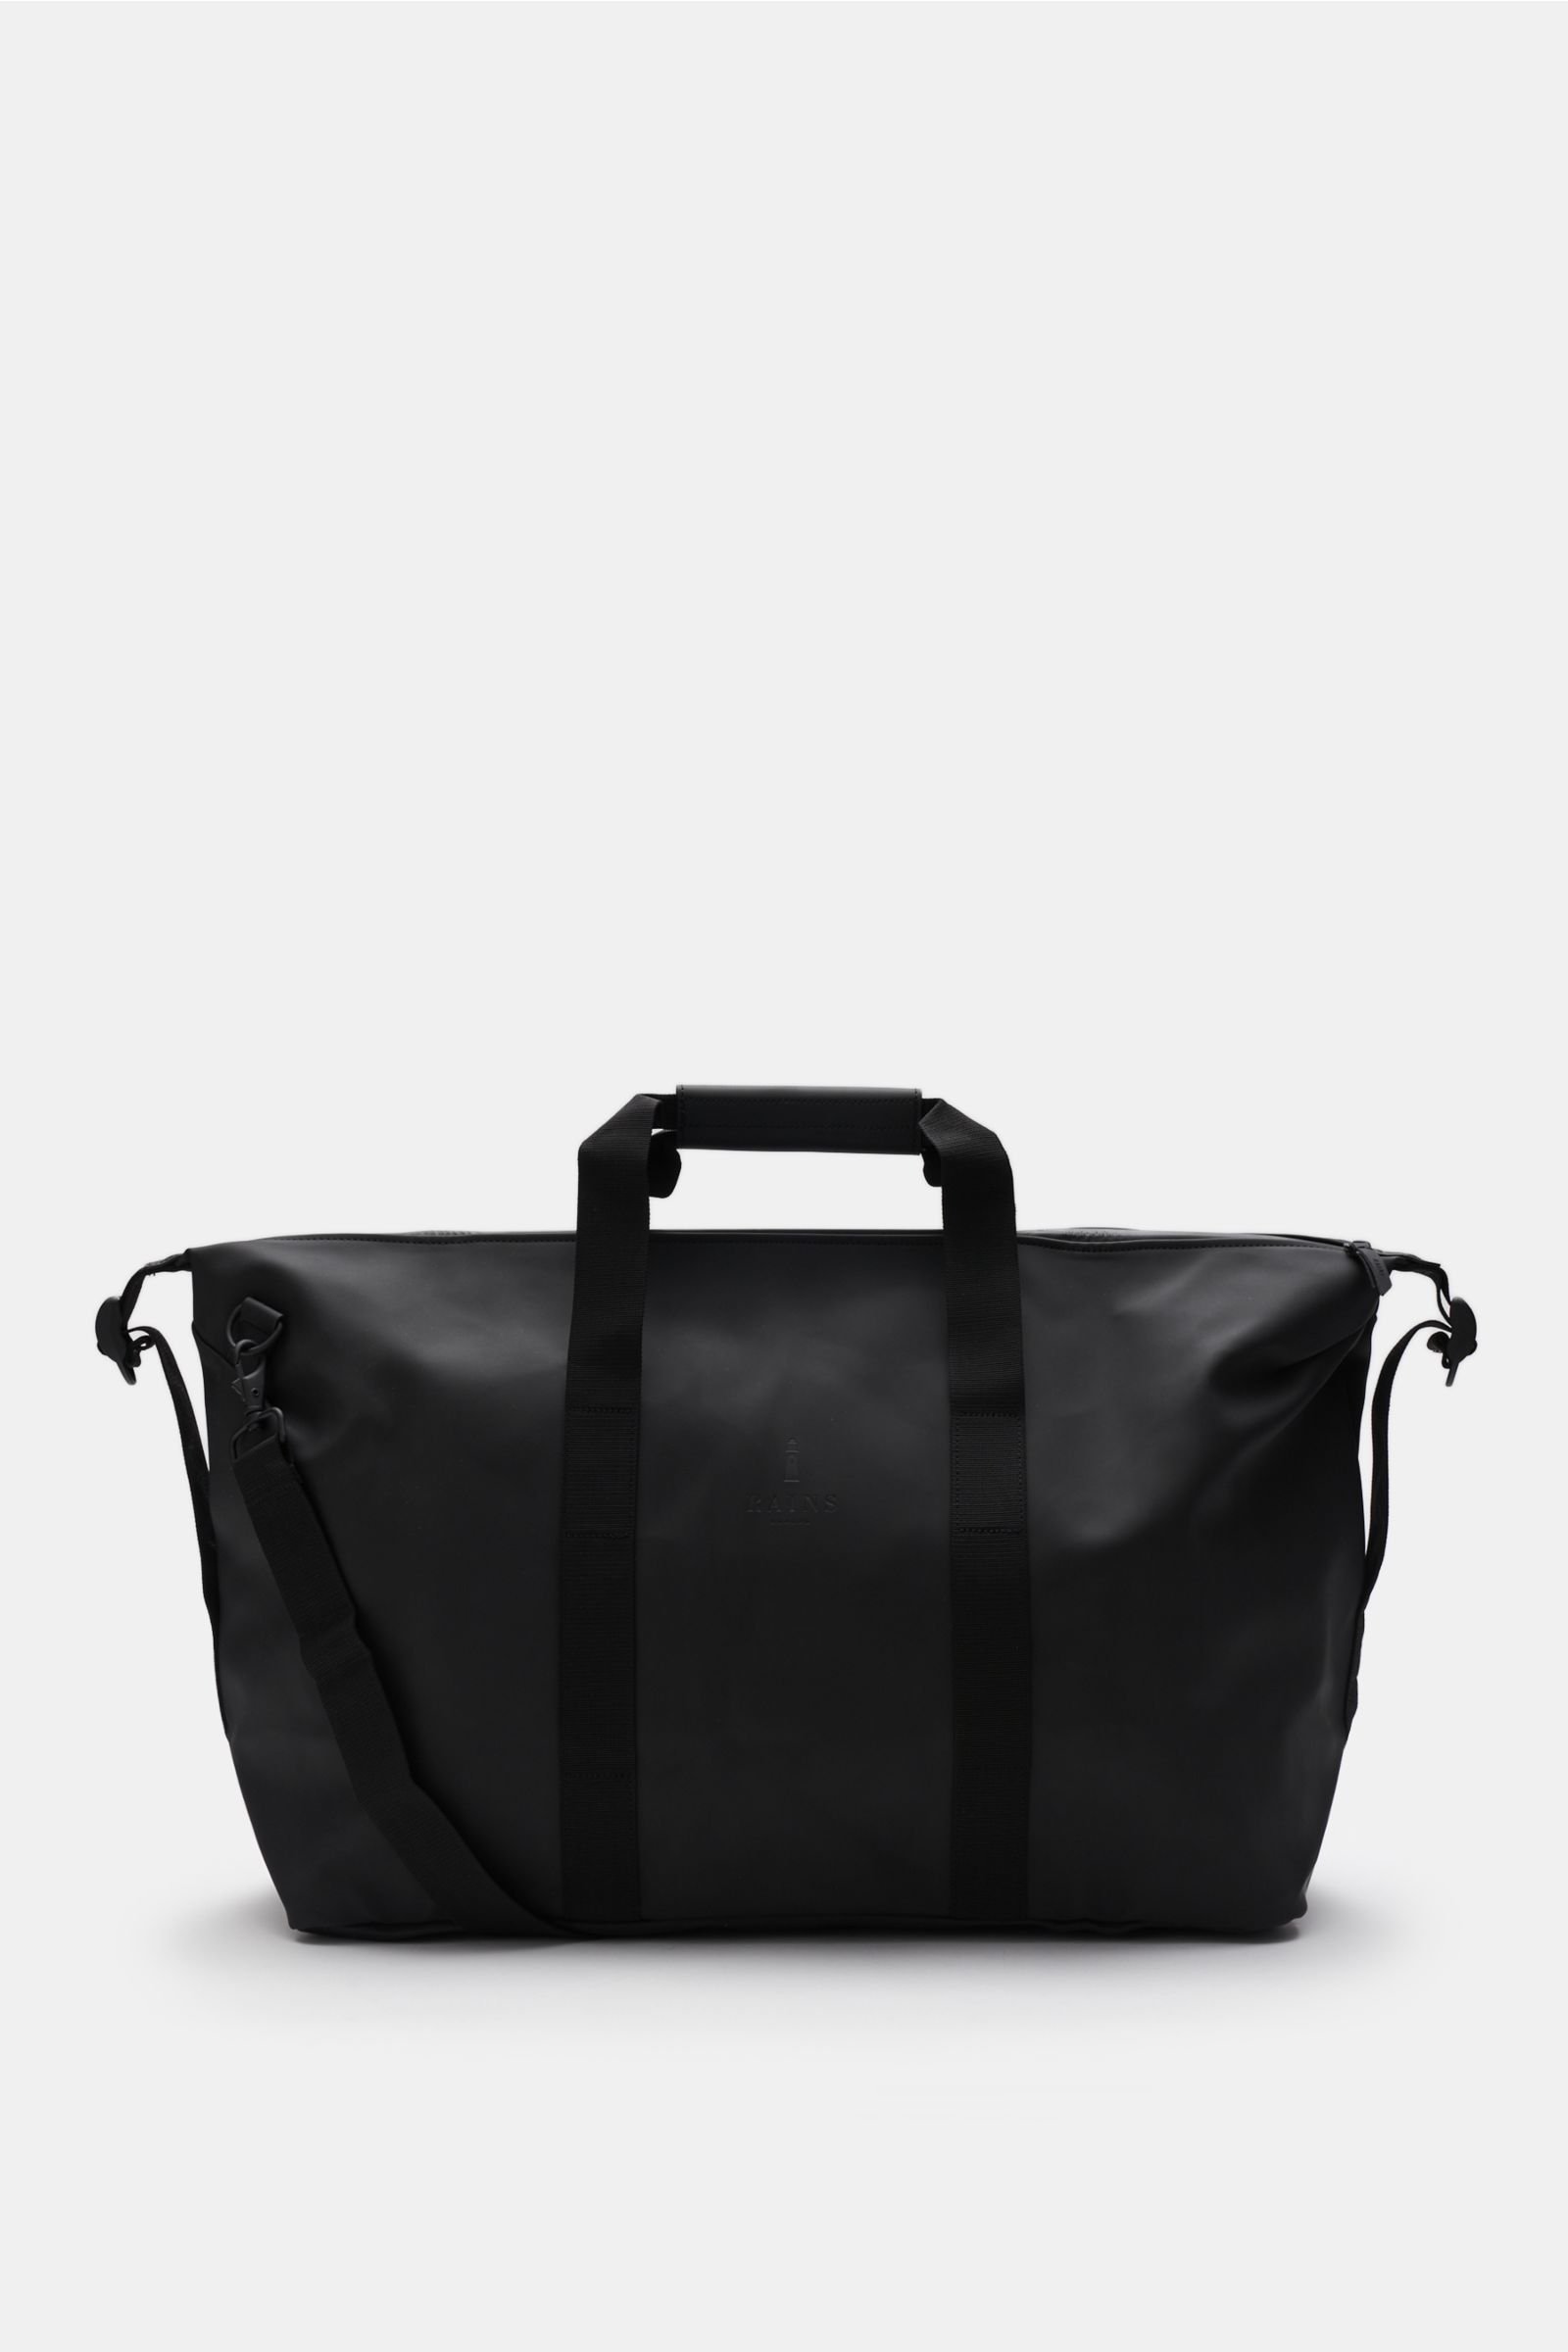 Travel bag 'Weekend Bag' black